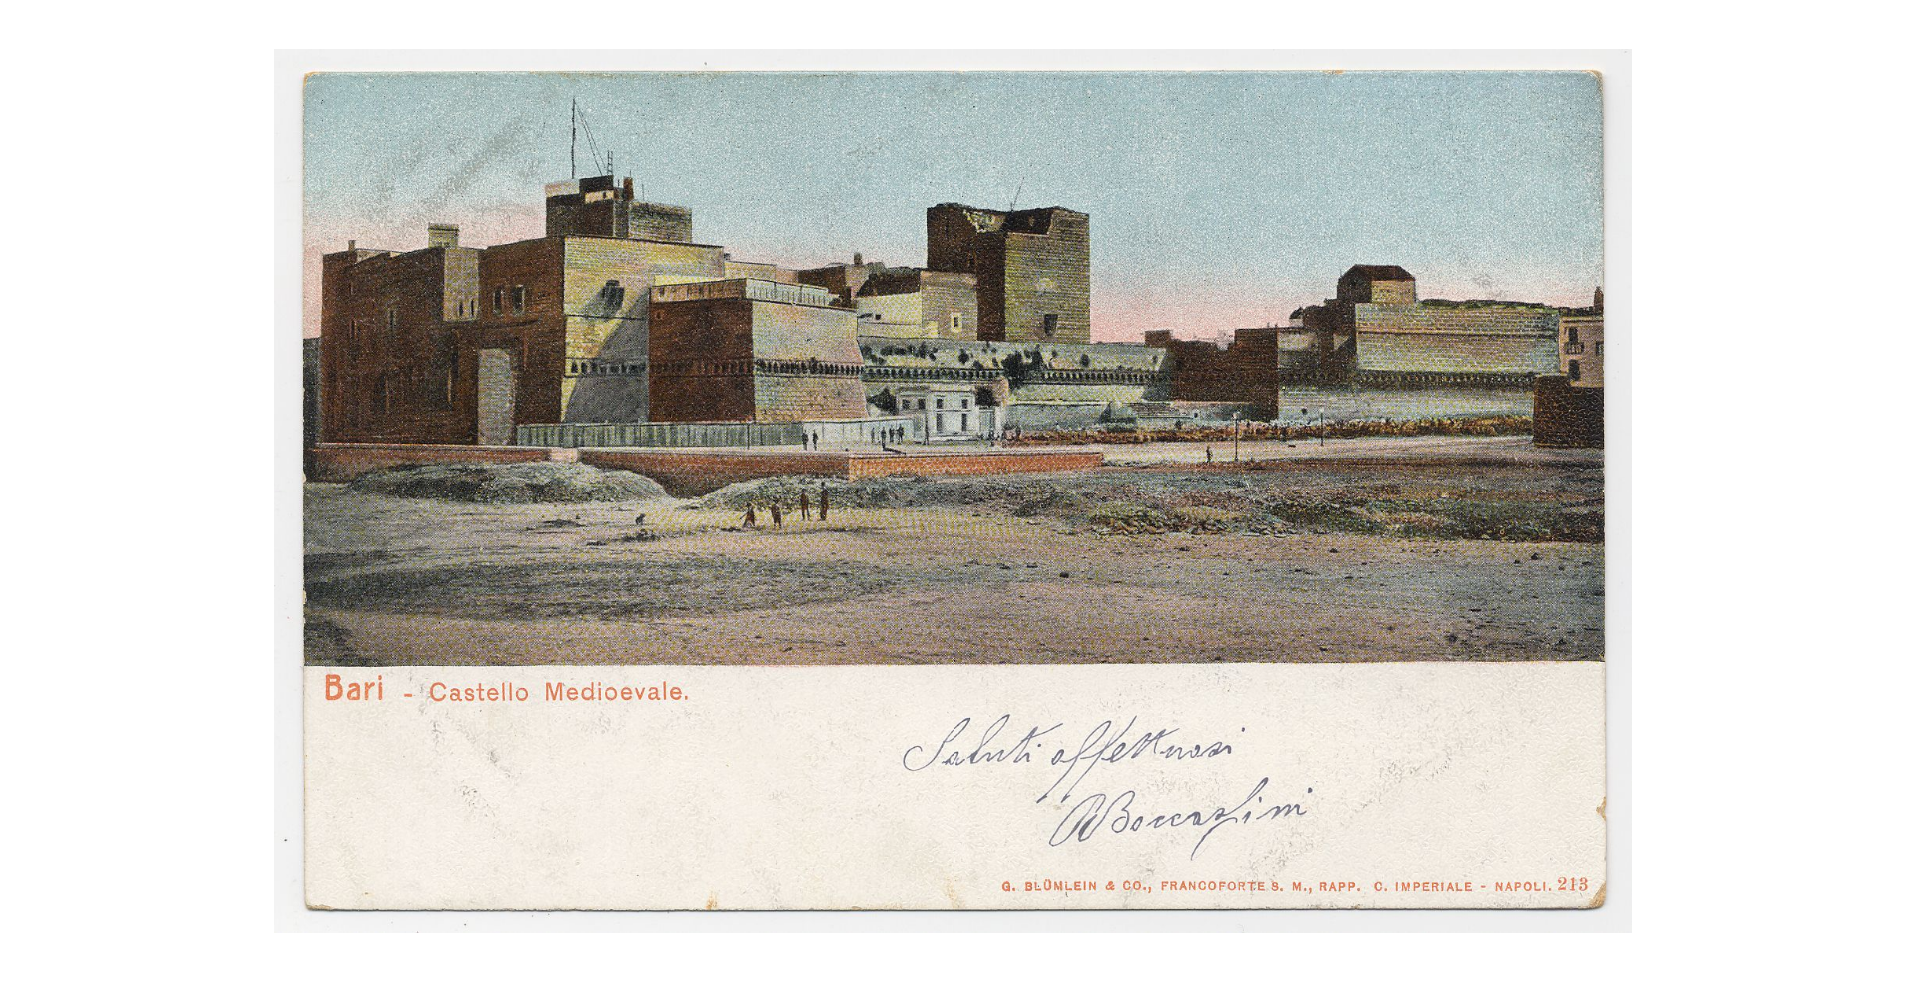 Fotografo non identificato, Bari - Castello medievale, 1904, cartolina, FFC018247